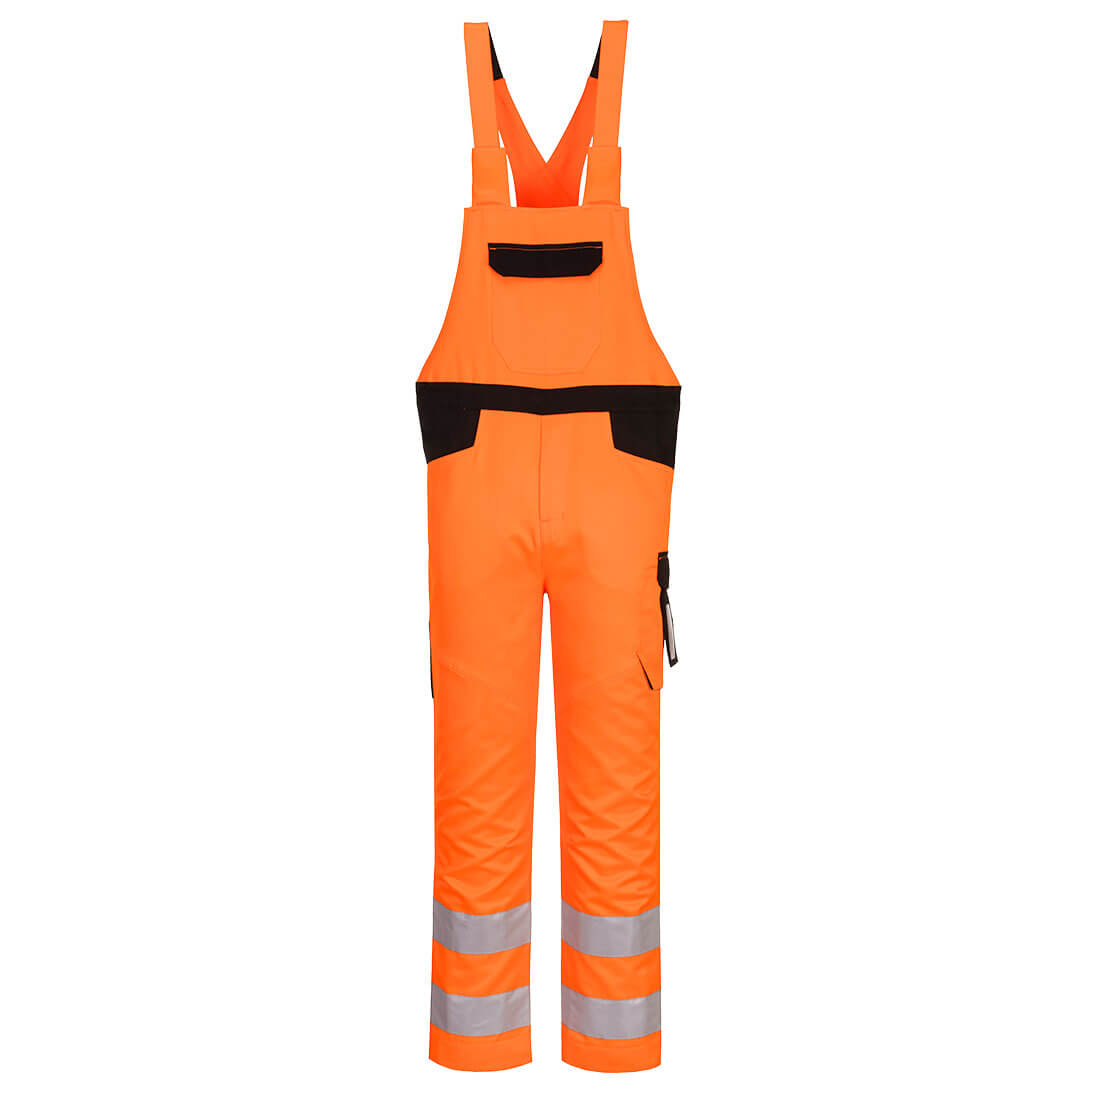 Pantaloni de protectie cu pieptar reflectorizanti portocaliu Portwest Hi-Vis Marime S dacris.net imagine 2022 depozituldepapetarie.ro